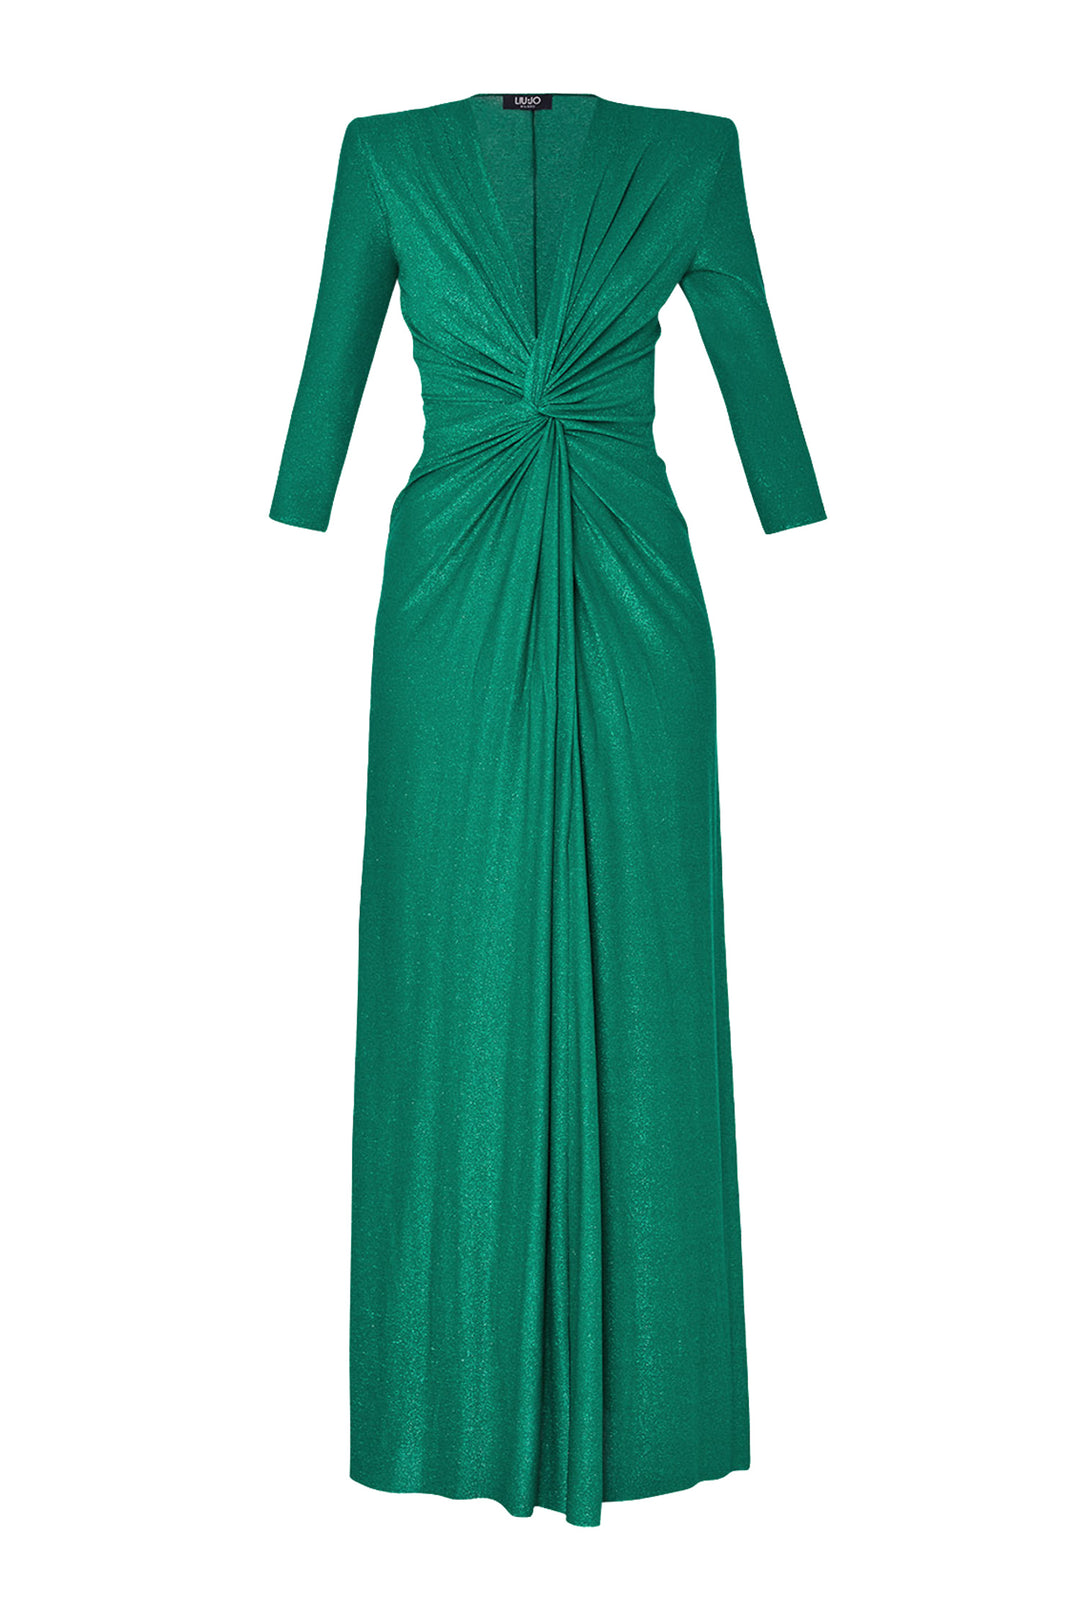 LIU JO Vestito da cerimonia verde in lurex con motivo arricciato - Mancinelli 1954